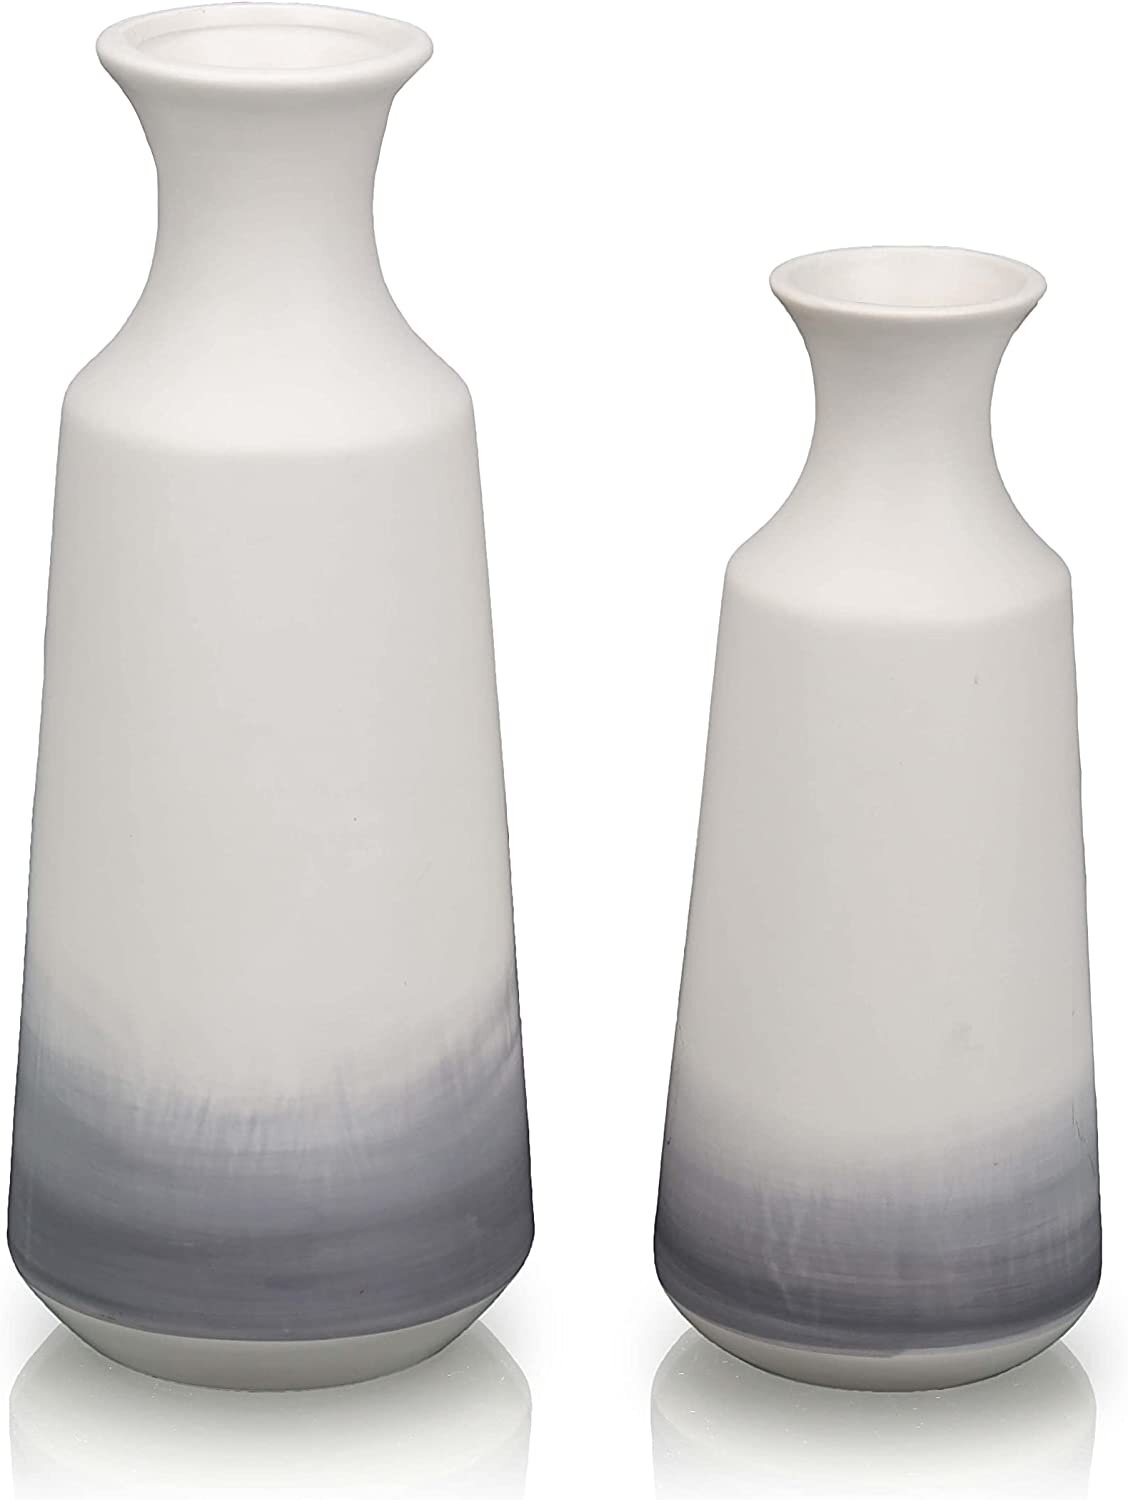 Details about   White Lace Flower Vase Pot Decor Holder 4" 5" 6" Square 